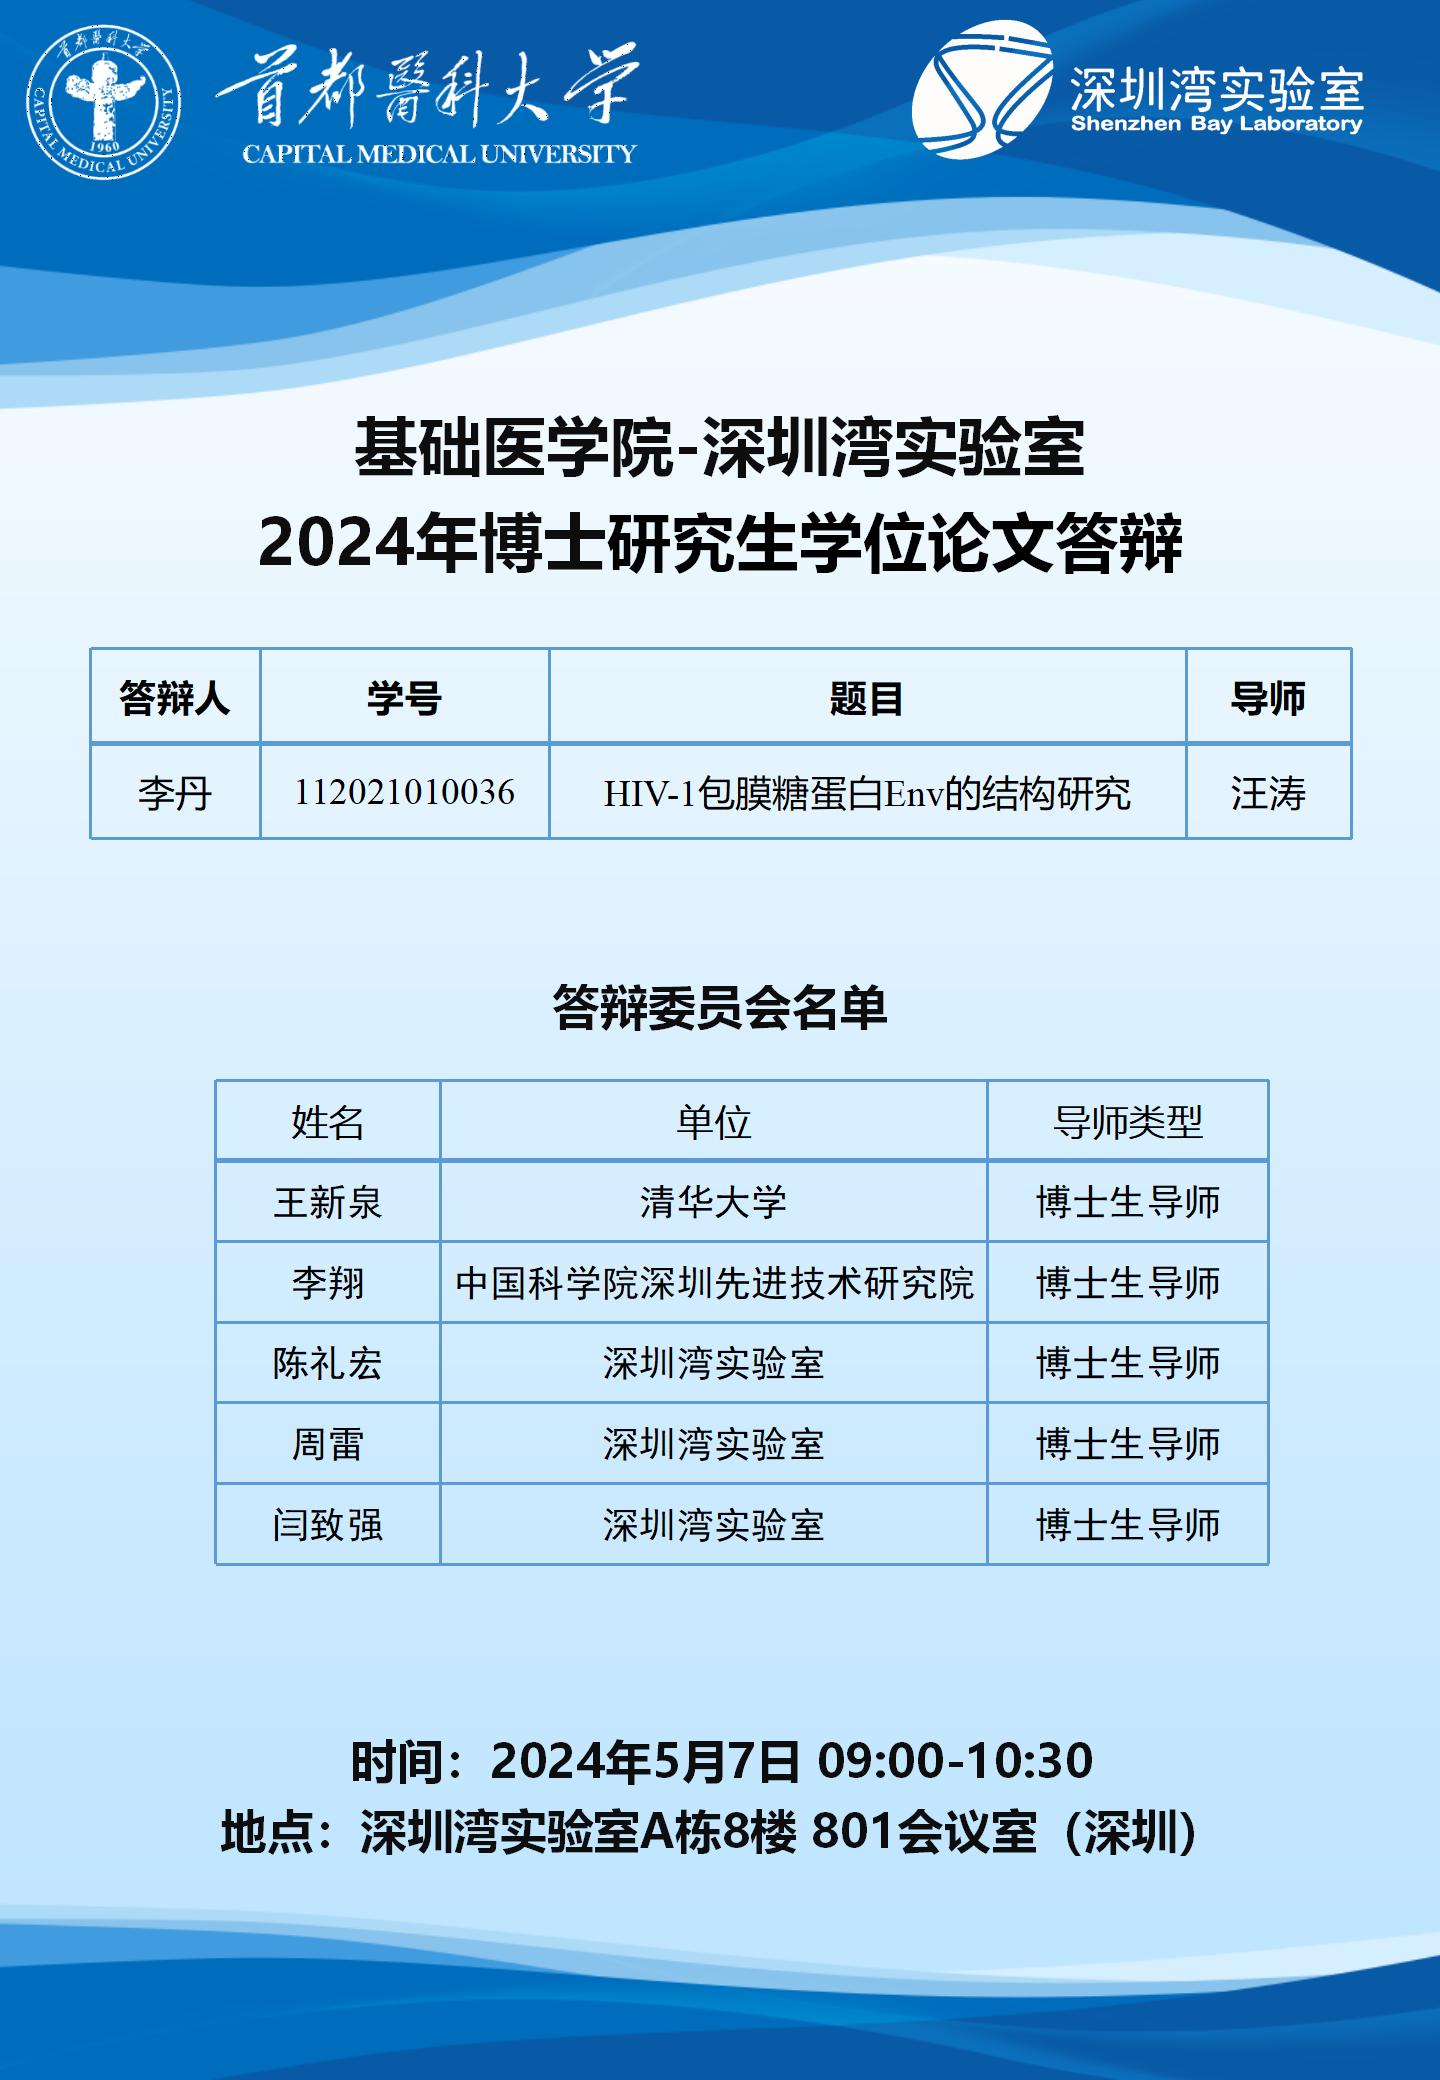 2024.5.7 深圳湾实验室-汪涛课题组.jpg